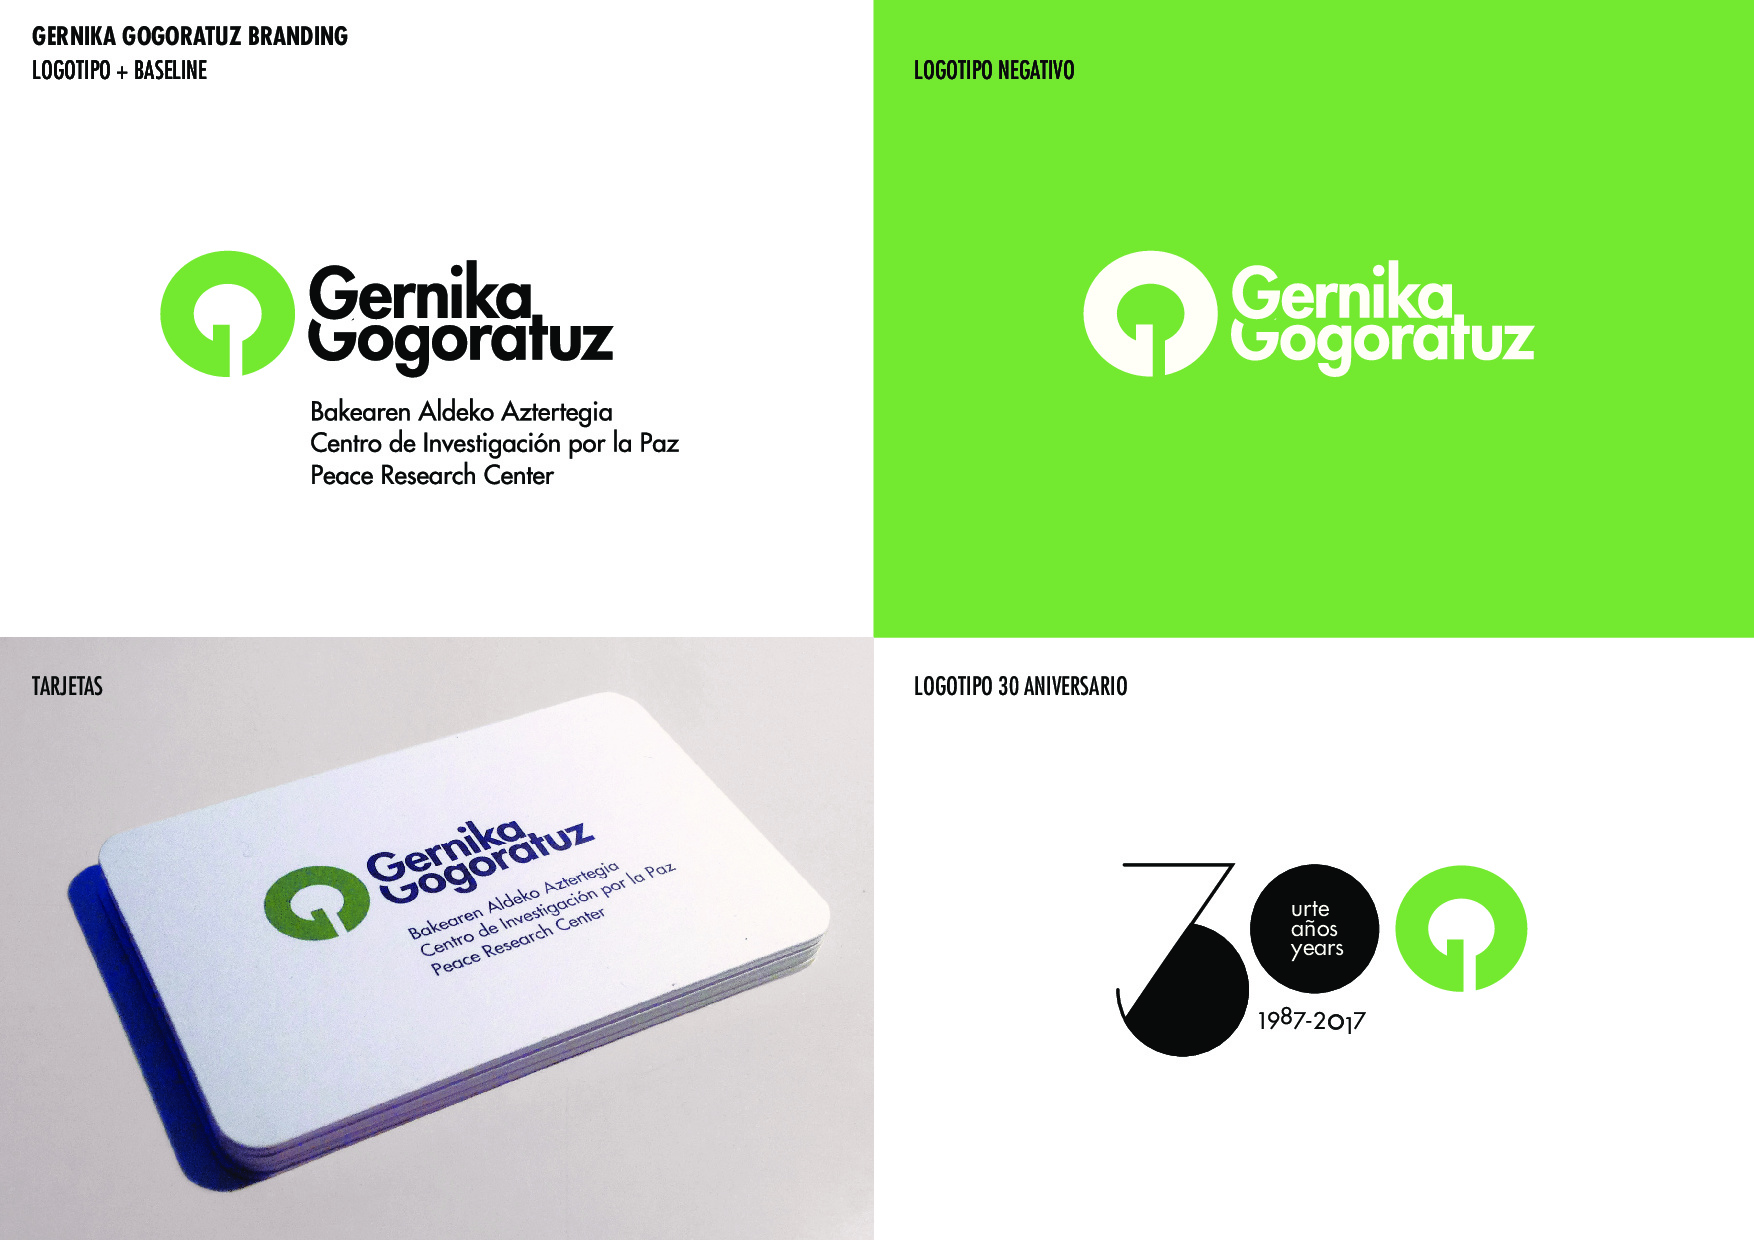 Gernika gogoratuz Branding by goikipedia - Creative Work - $i